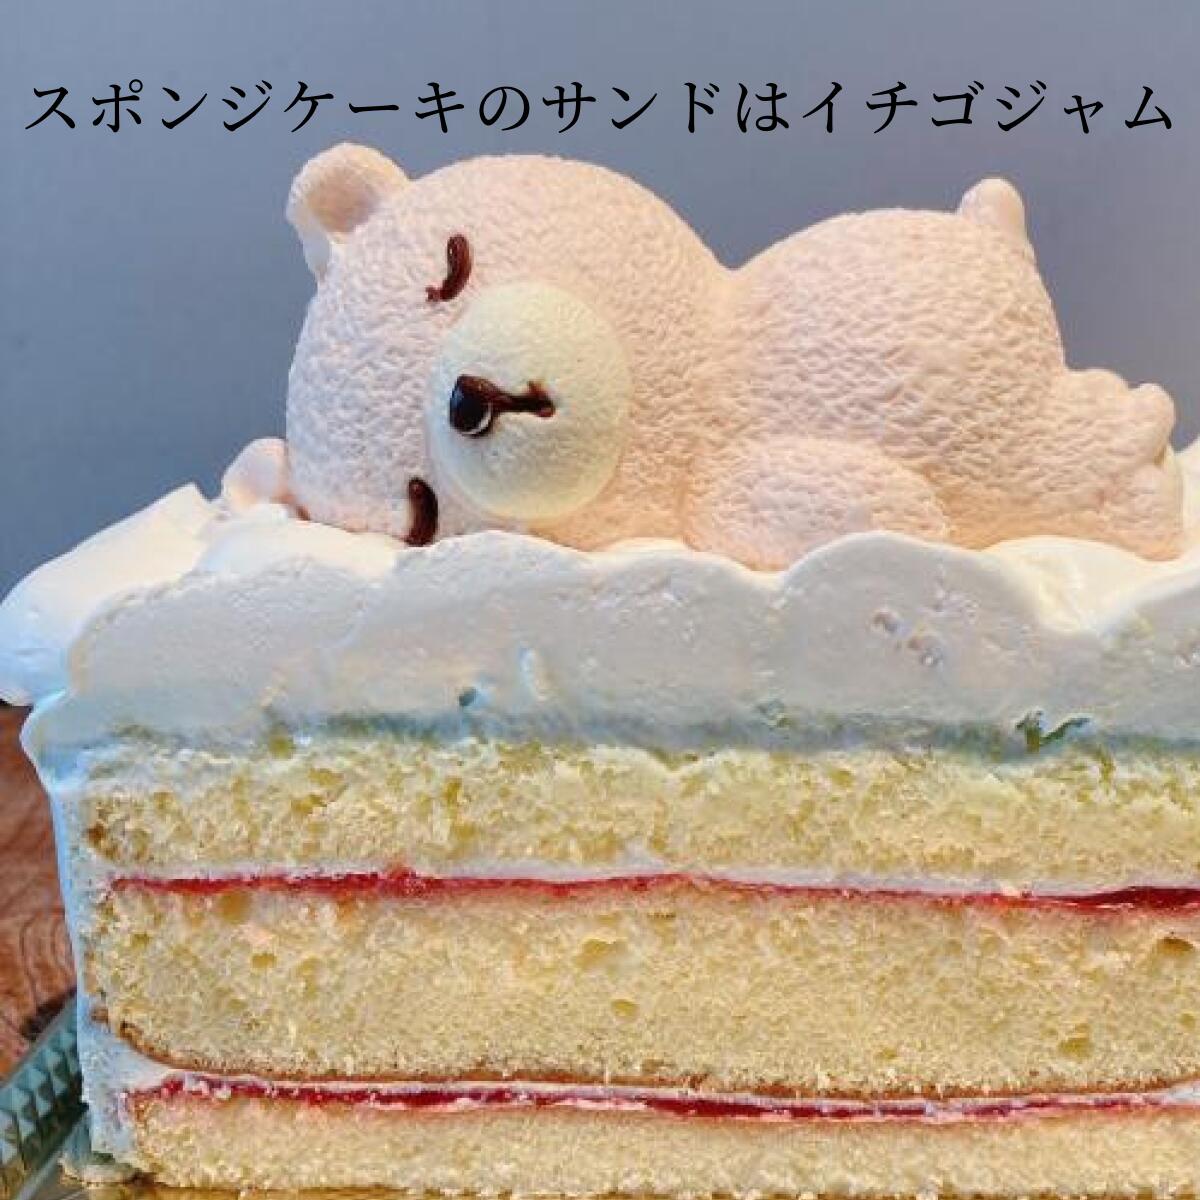 お手軽価格で贈りやすい おひるねくまのくぅちゃん ホールケーキ 6号 誕生日ケーキ バースデーケーキ 記念日 クマ くま 動物 キャラクター  プレゼント ギフト お取り寄せ 誕生日 ケーキ バースデー お祝い